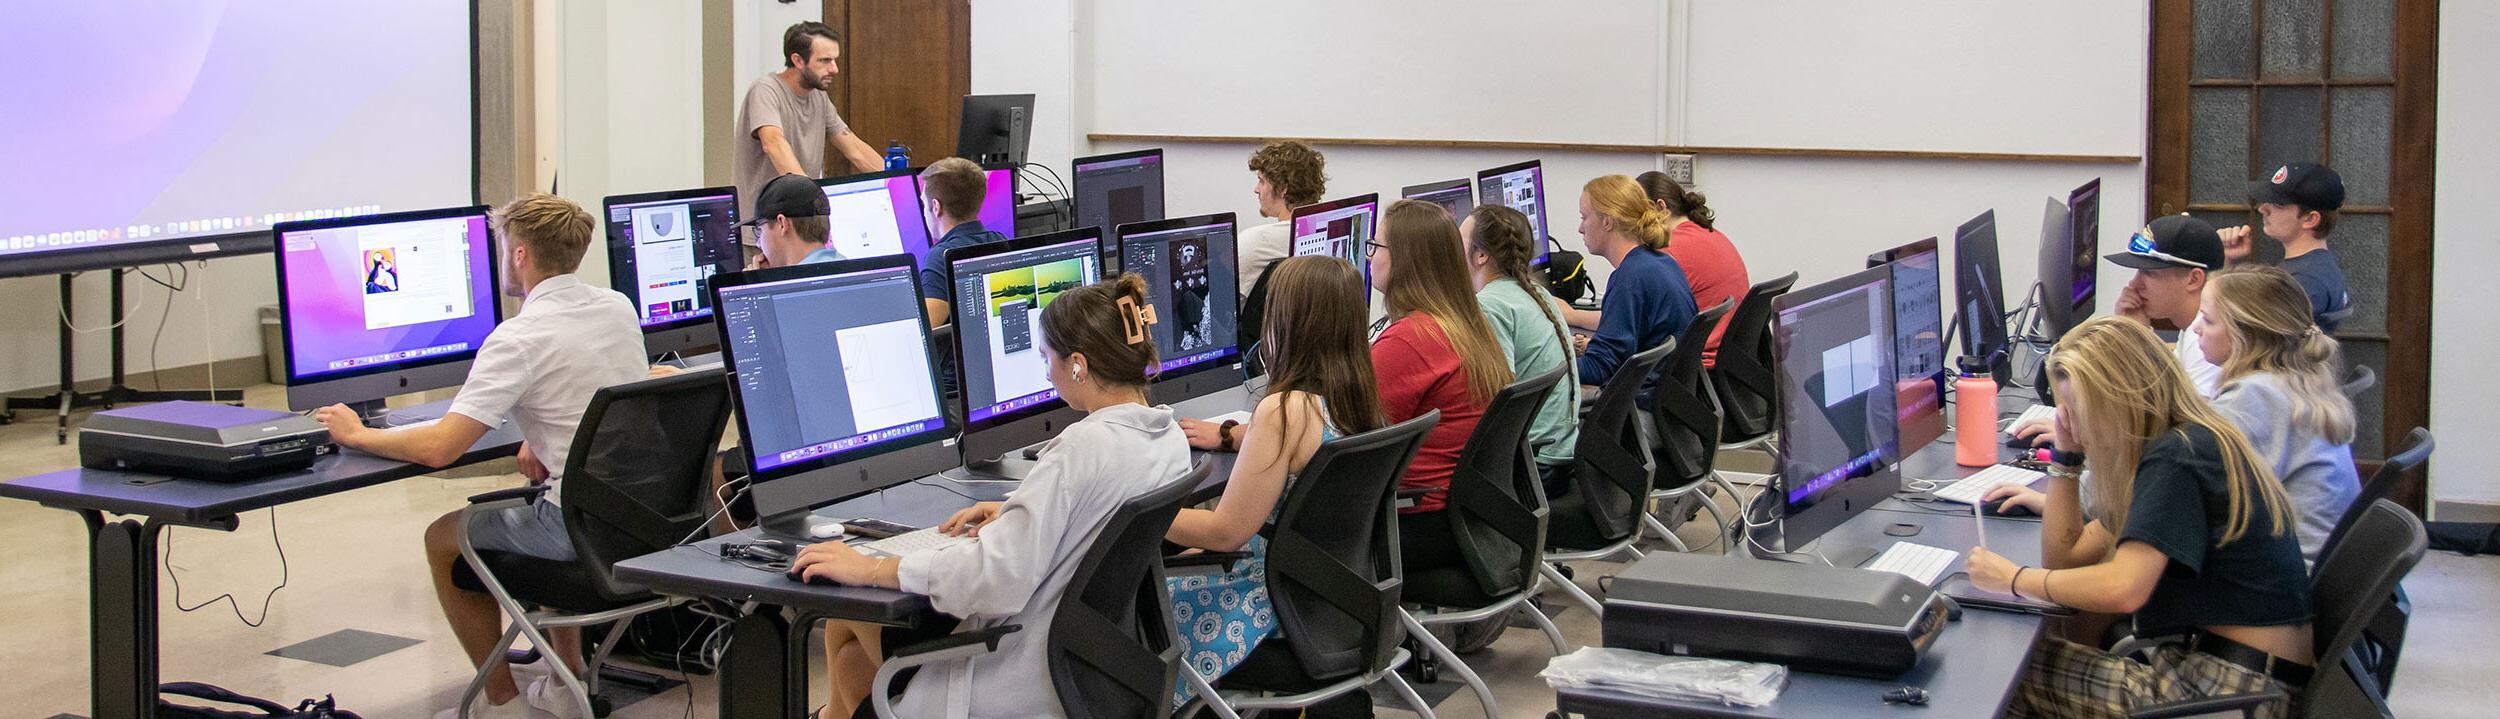 教室里有三排桌子和大显示器的电脑. 学生们坐在课桌前，老师站在教室前面.